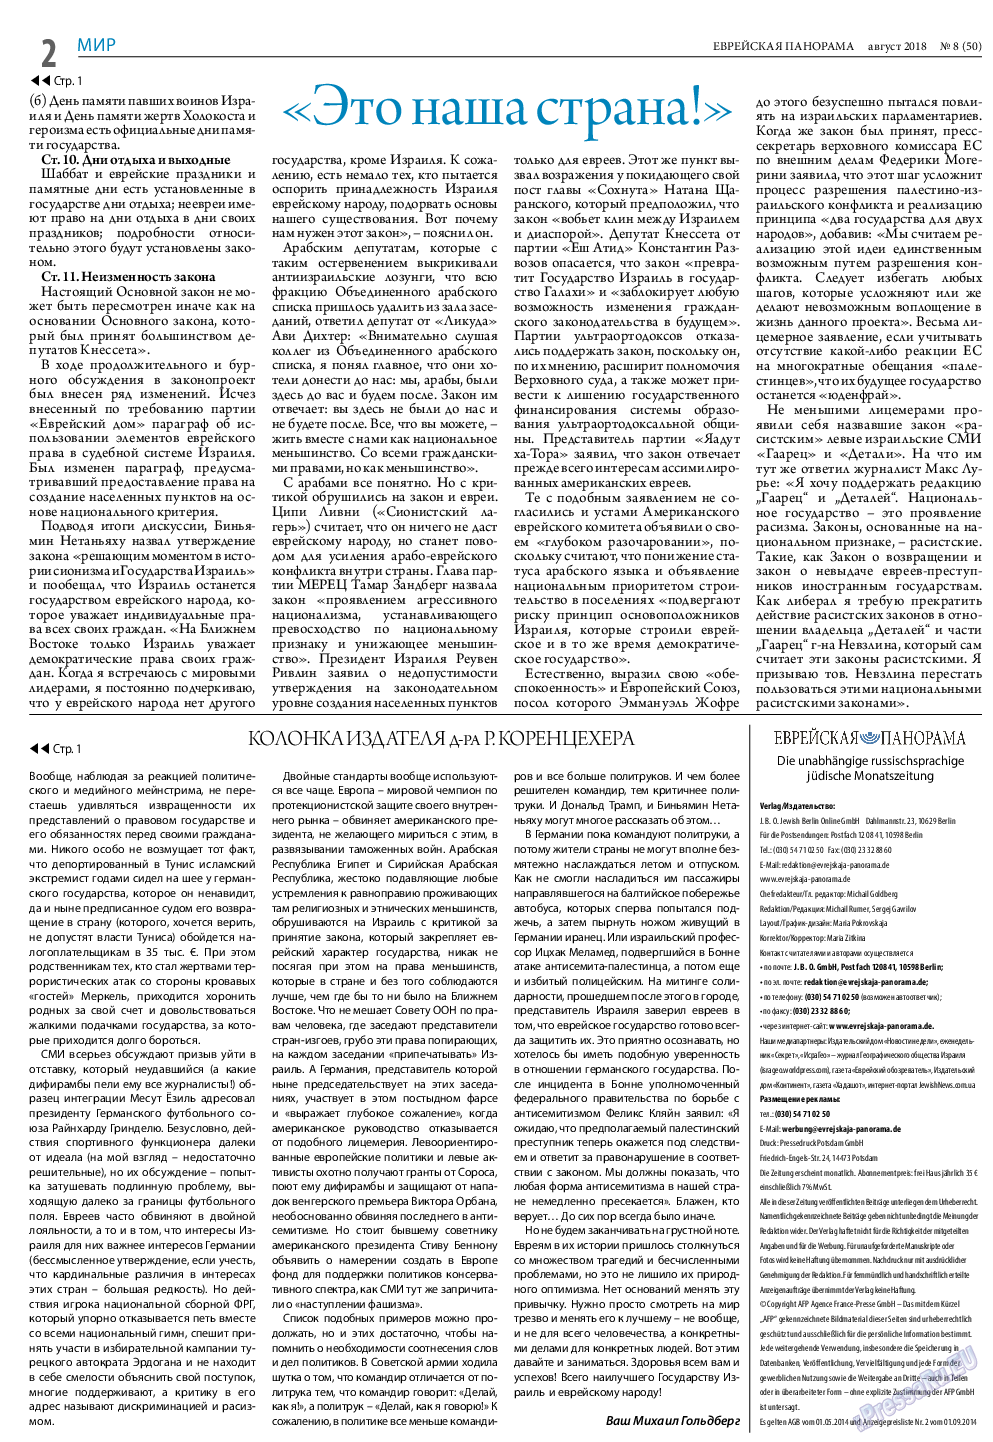 Еврейская панорама (газета). 2018 год, номер 8, стр. 2